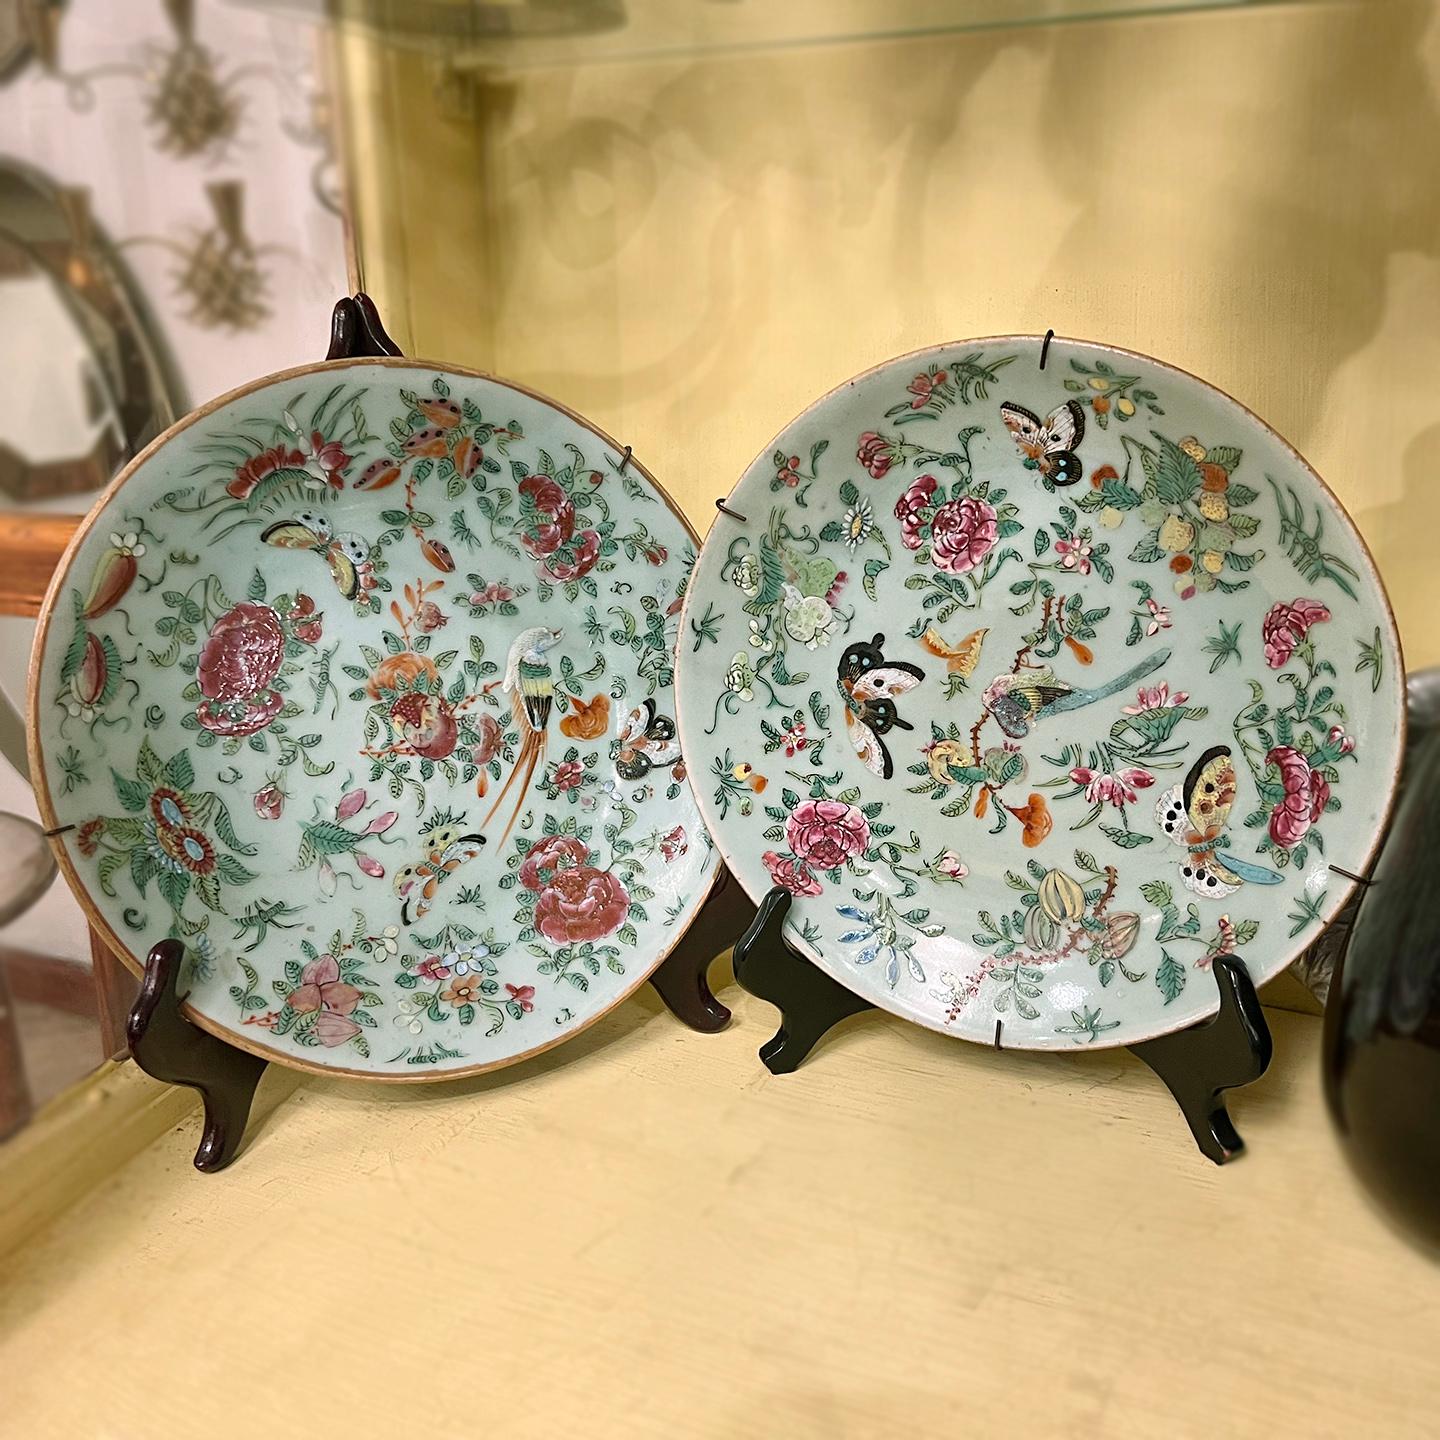 Paire d'assiettes décoratives en porcelaine céladon chinoise du XIXe siècle, peintes à la main.

Mesures :
Diamètre : 8,5